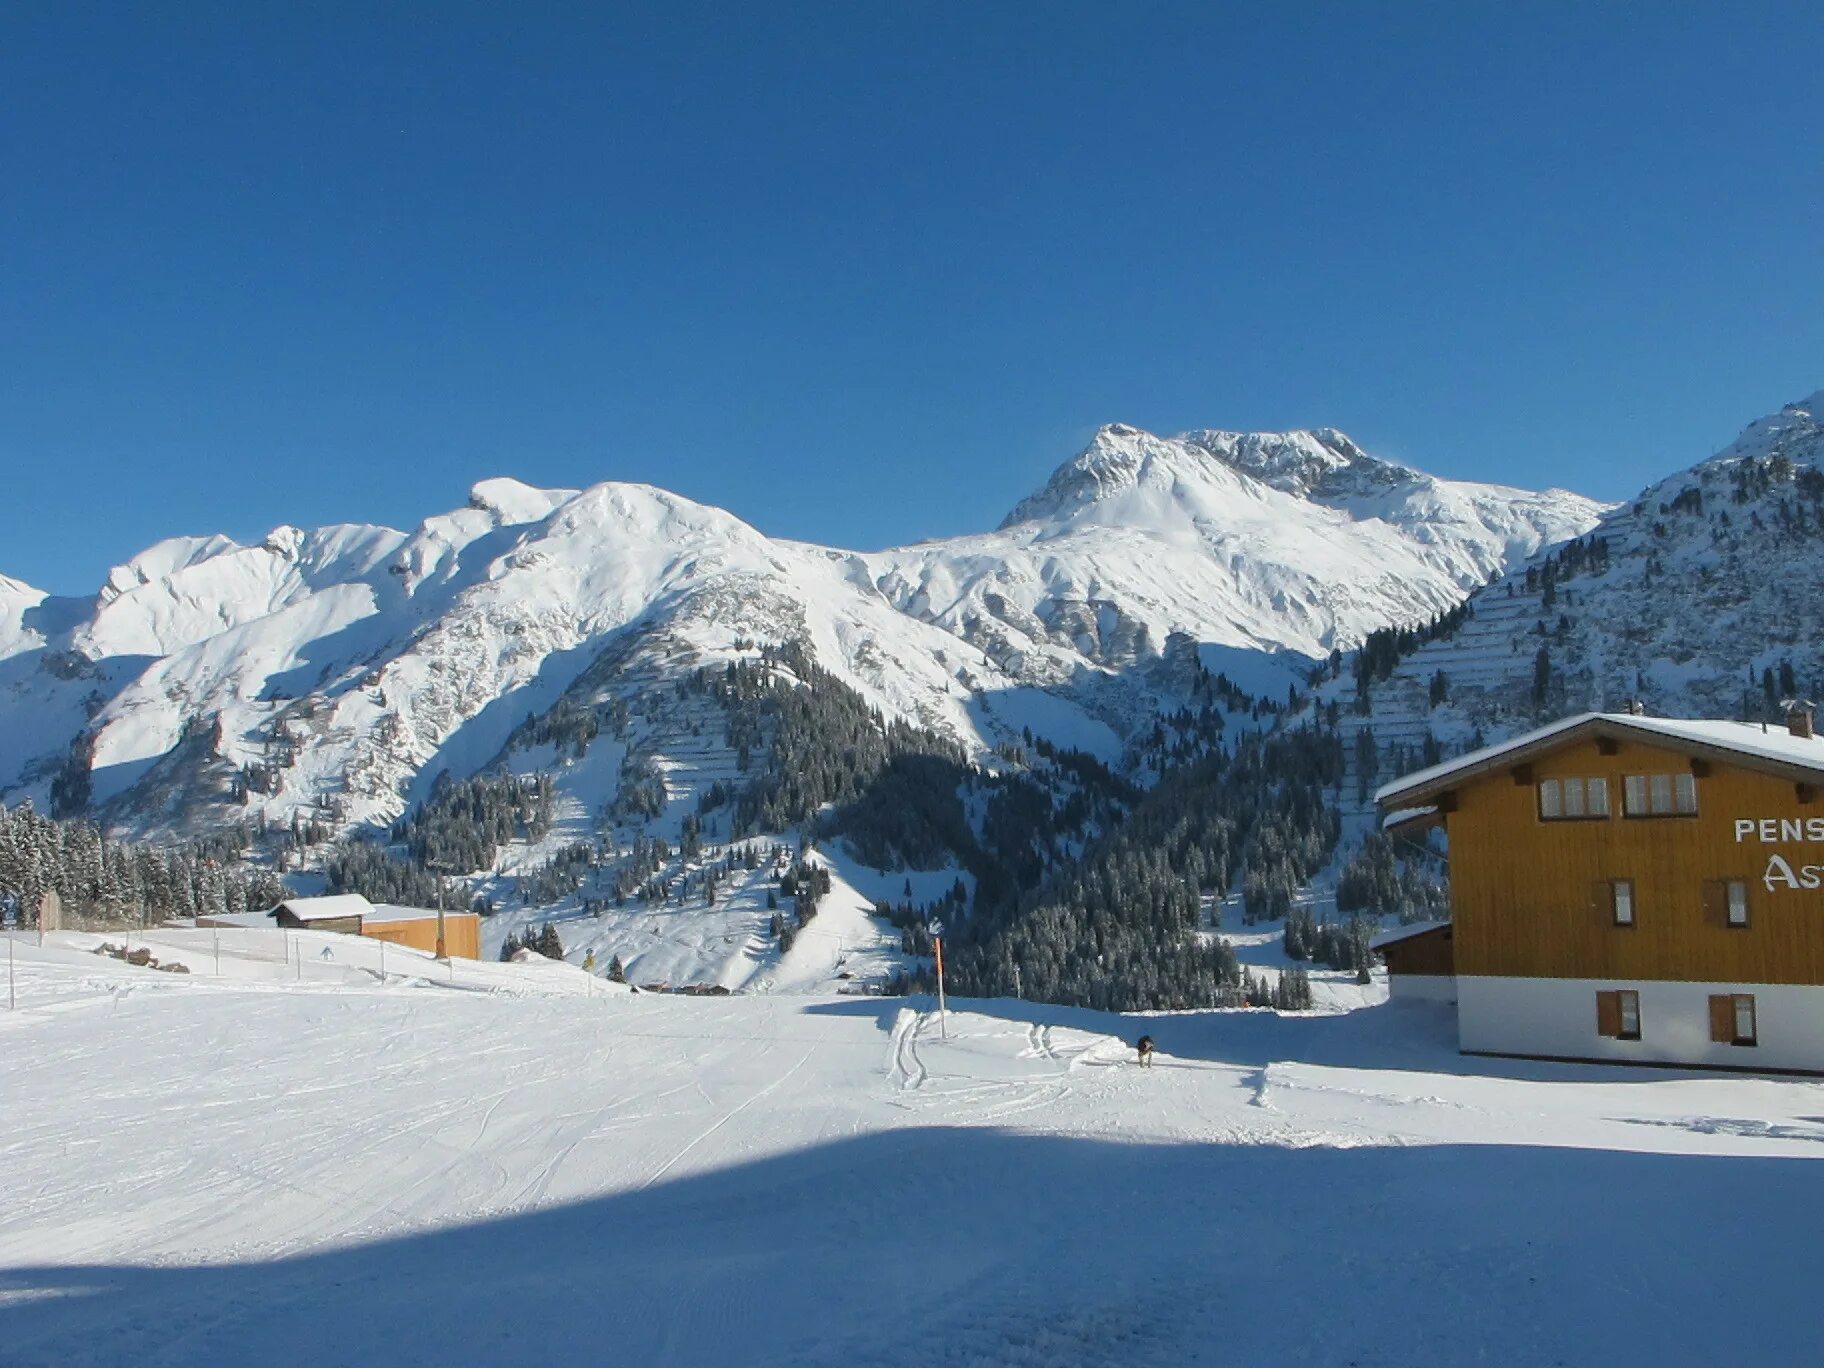 Лех Австрия горнолыжный курорт. Австрия Альпийские горы курорт. Австрия Альпы горнолыжные. Австрийские Альпы курорты. Alp ski